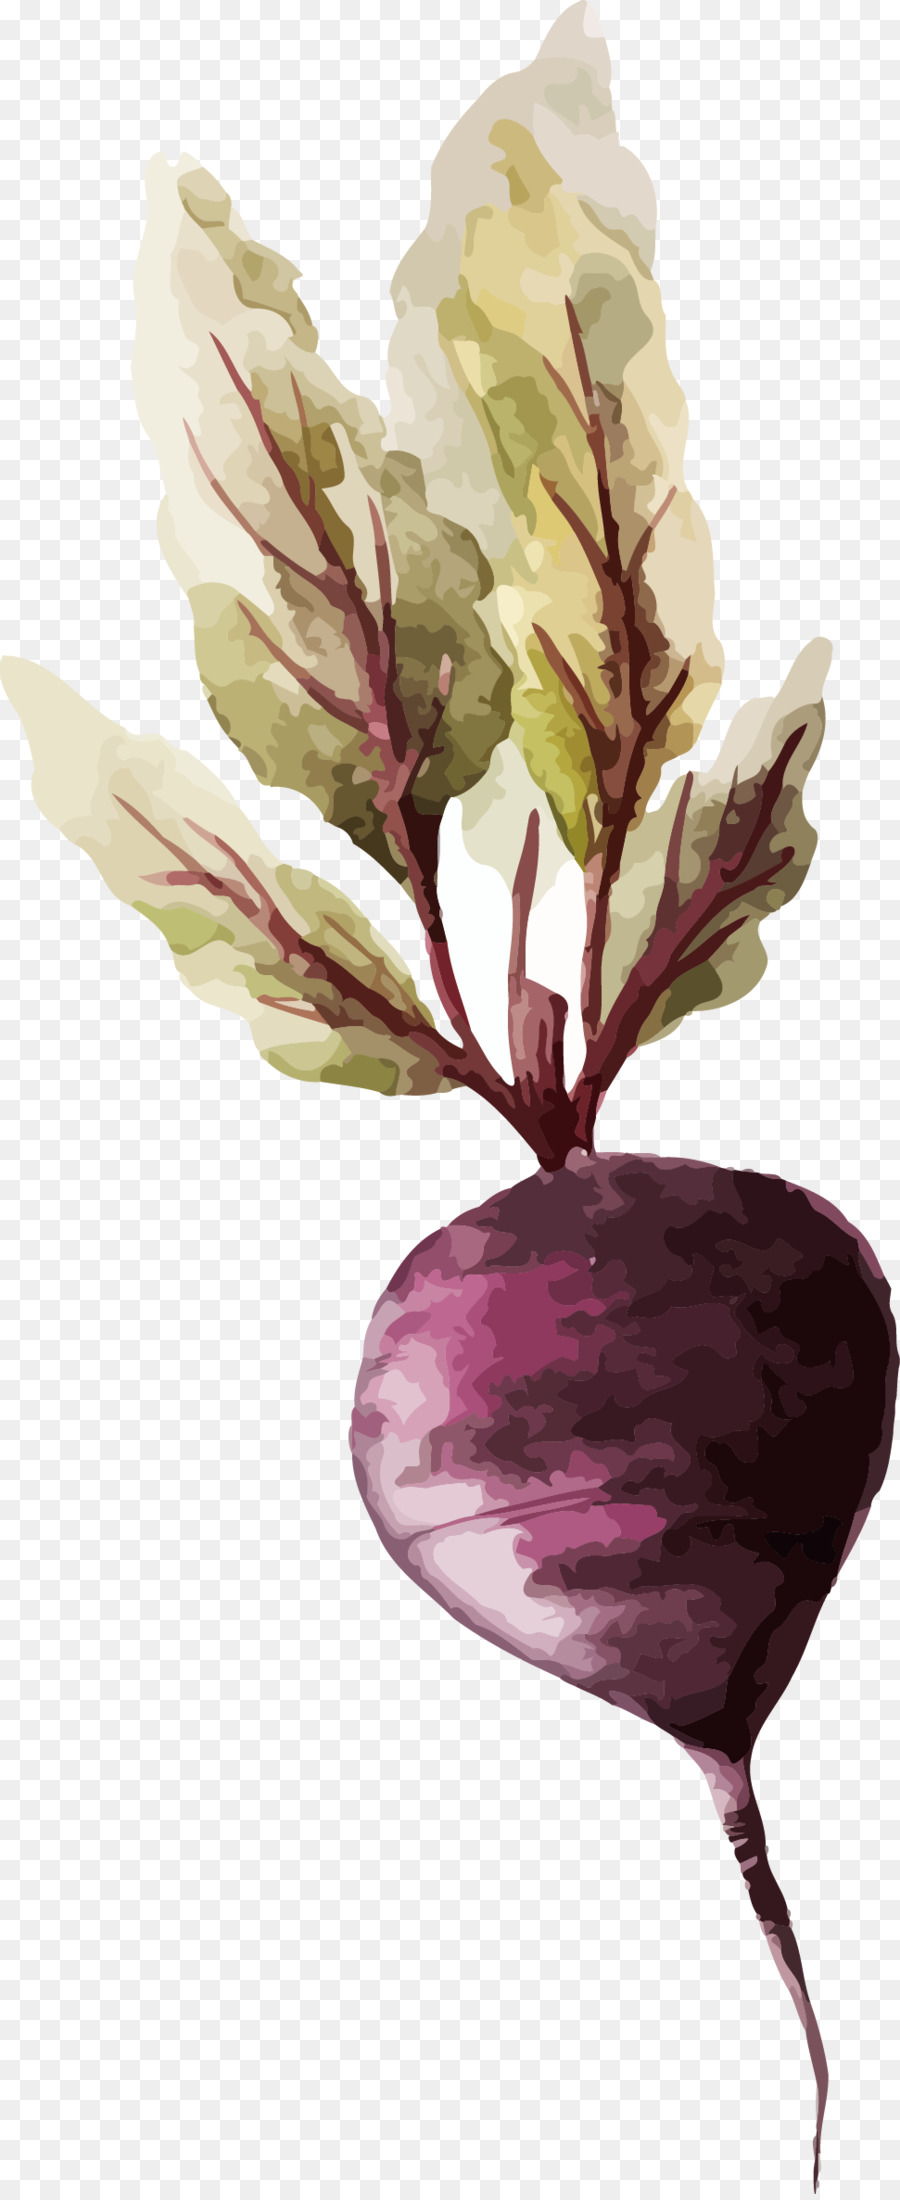 Aquarell-Malerei-Gemüse-Zeichnung-Illustration - Karotte